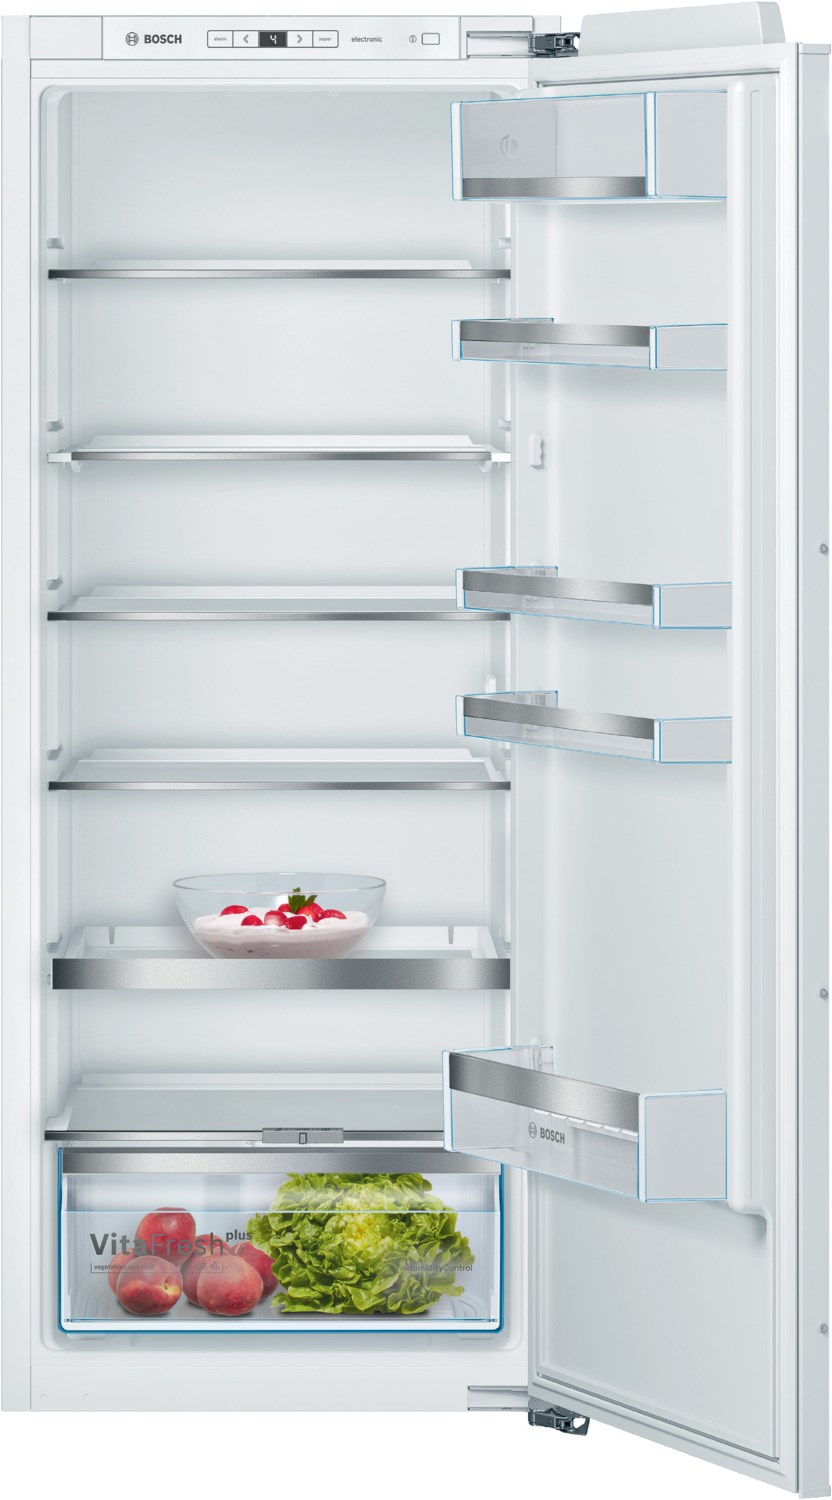 KIR51AFE0 Einbau-Kühlschrank weiß / E von Bosch